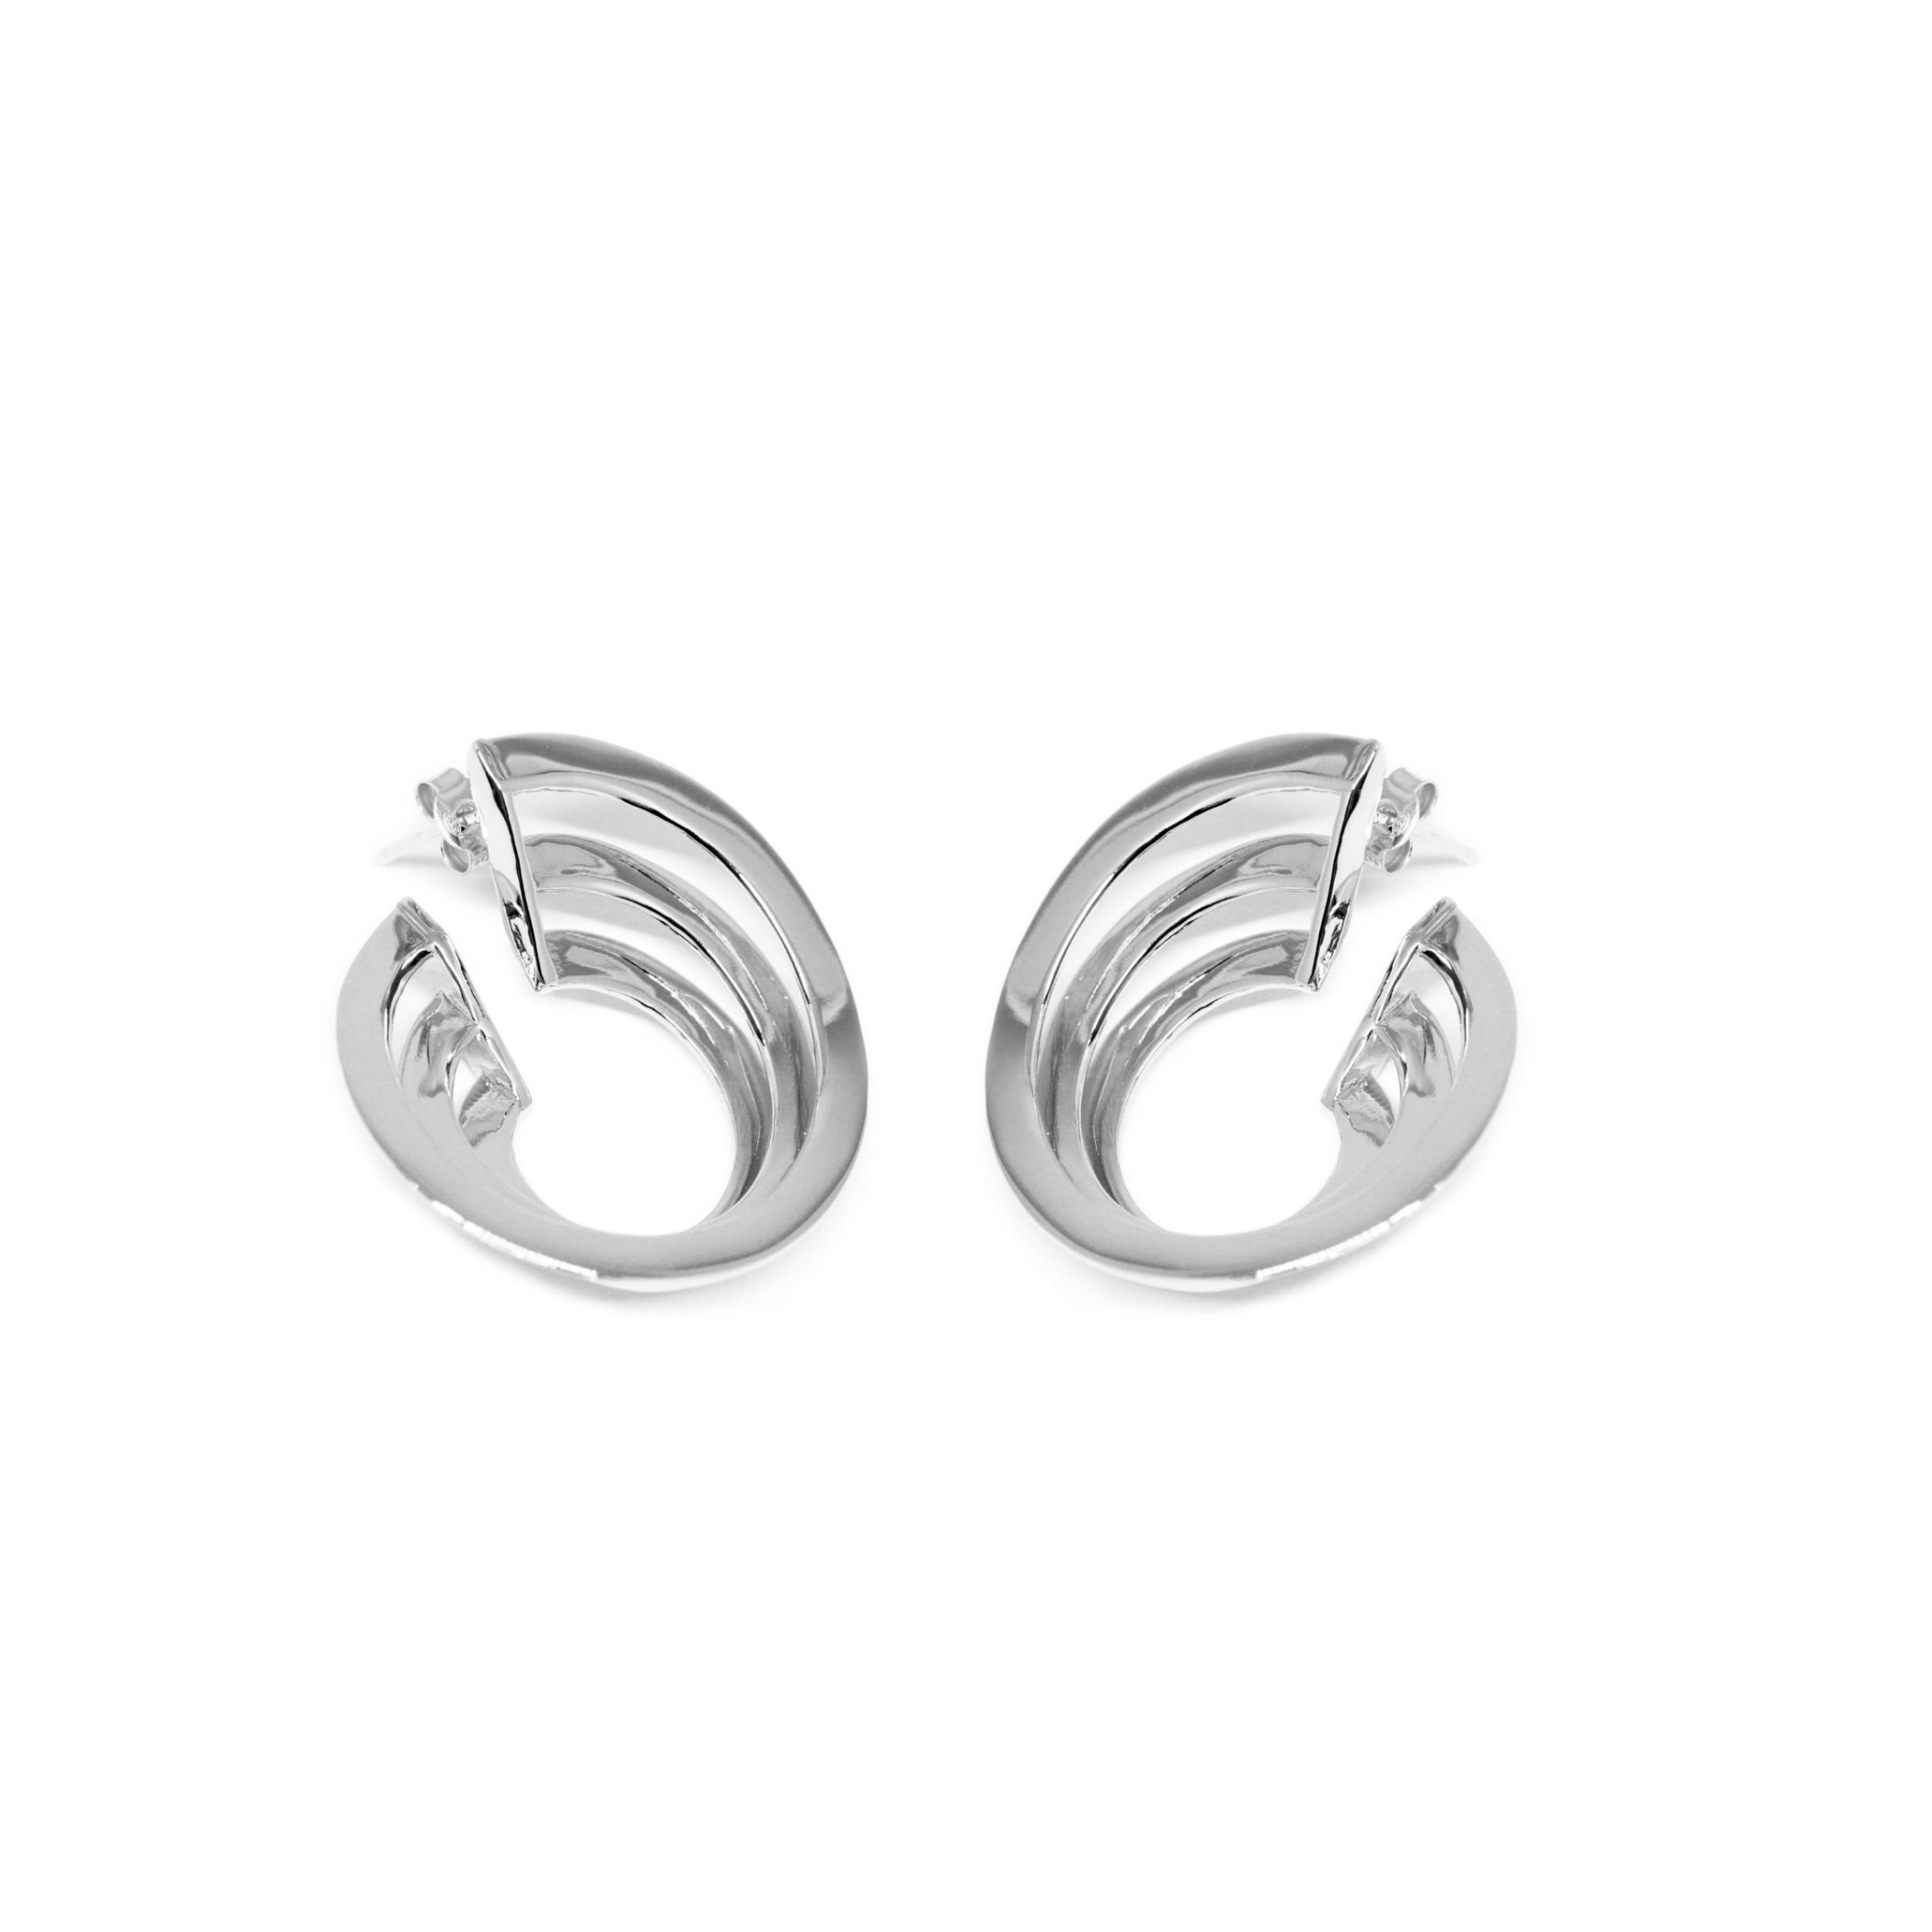 Solomon Guggenheim New York Earrings Co.Ro. Jewels Silver